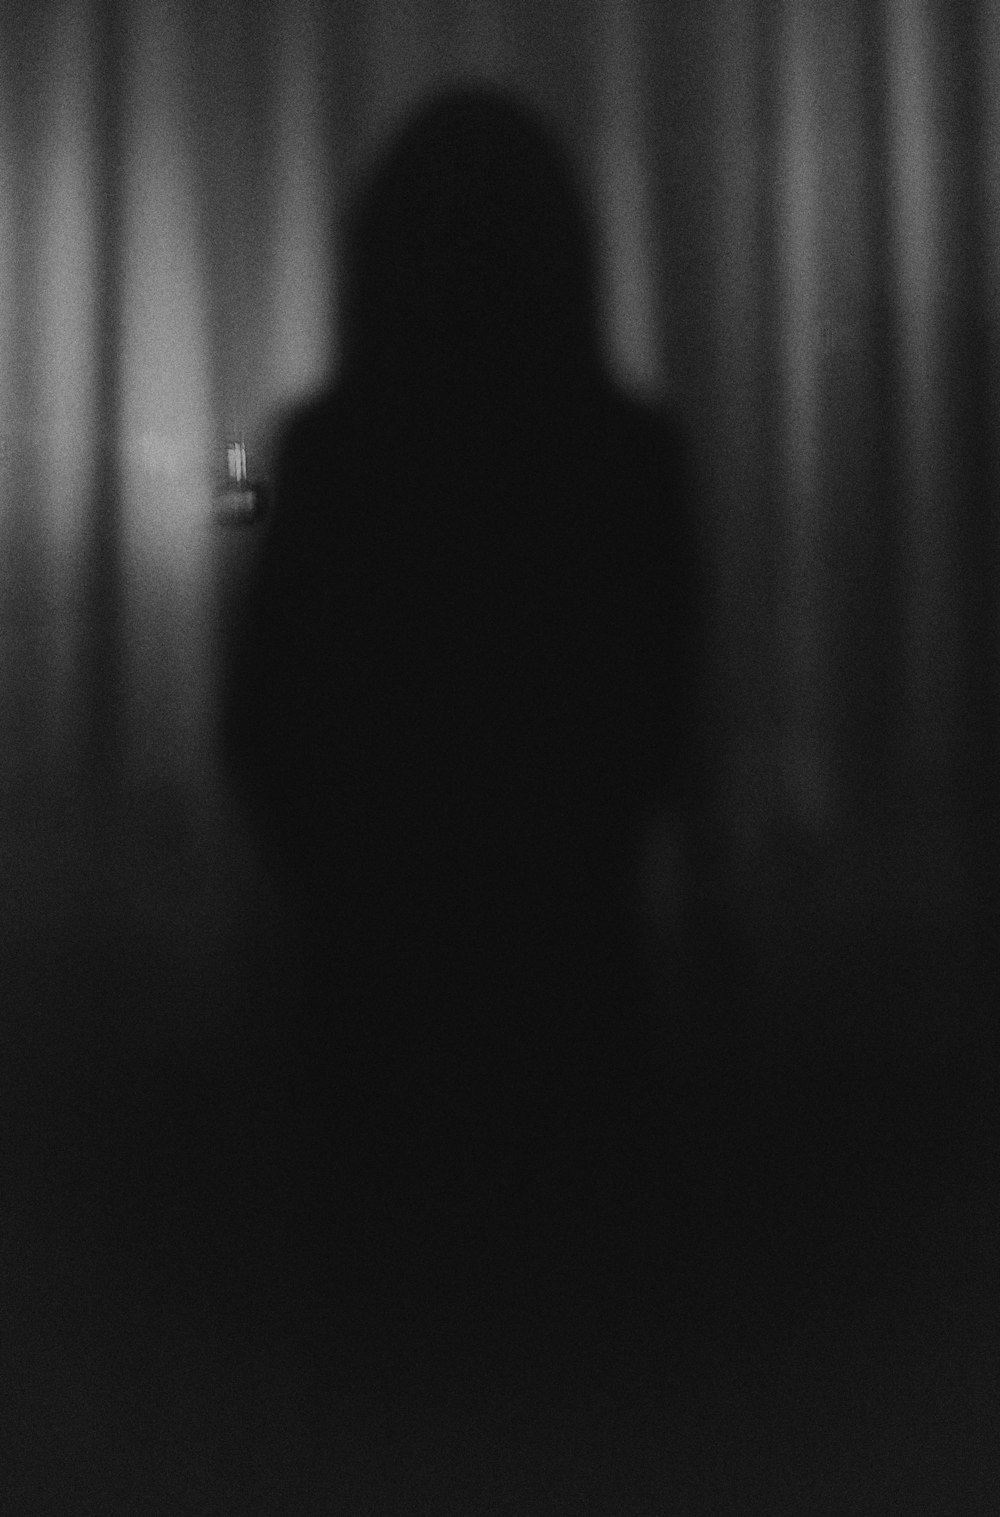 Una persona in piedi davanti a una tenda nel buio